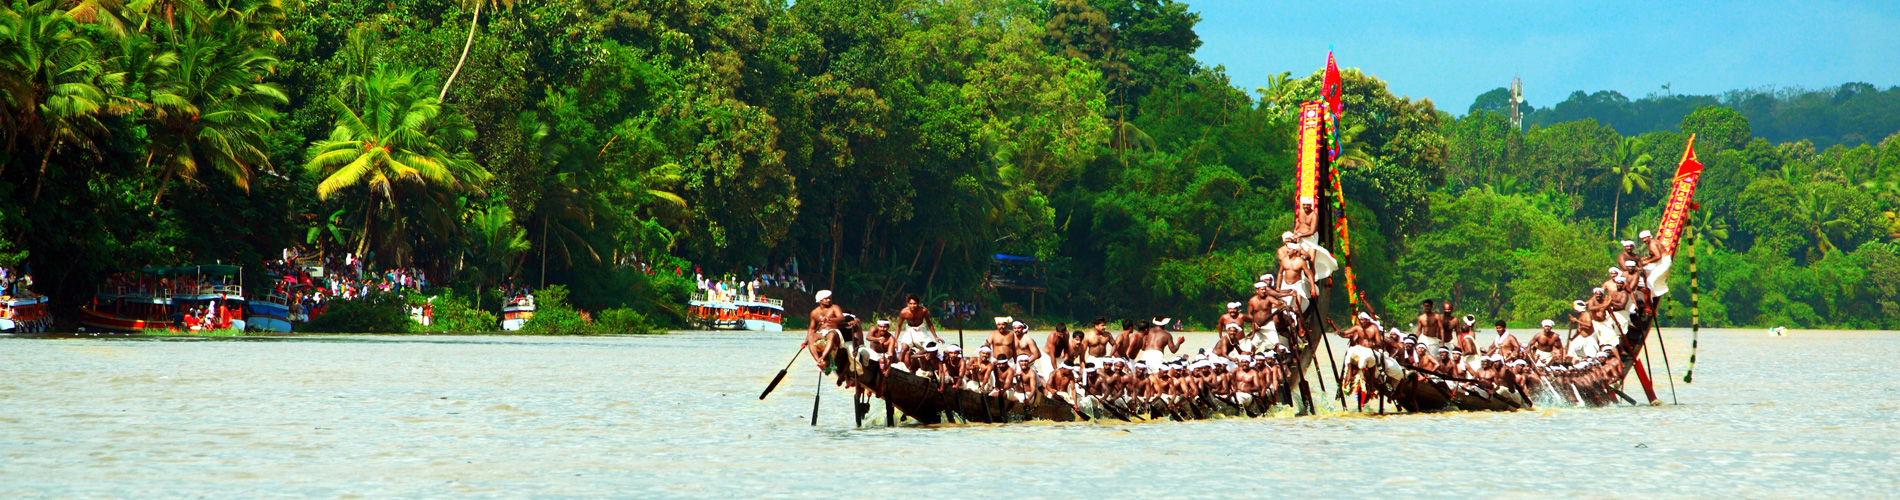 Boat racing in kerala